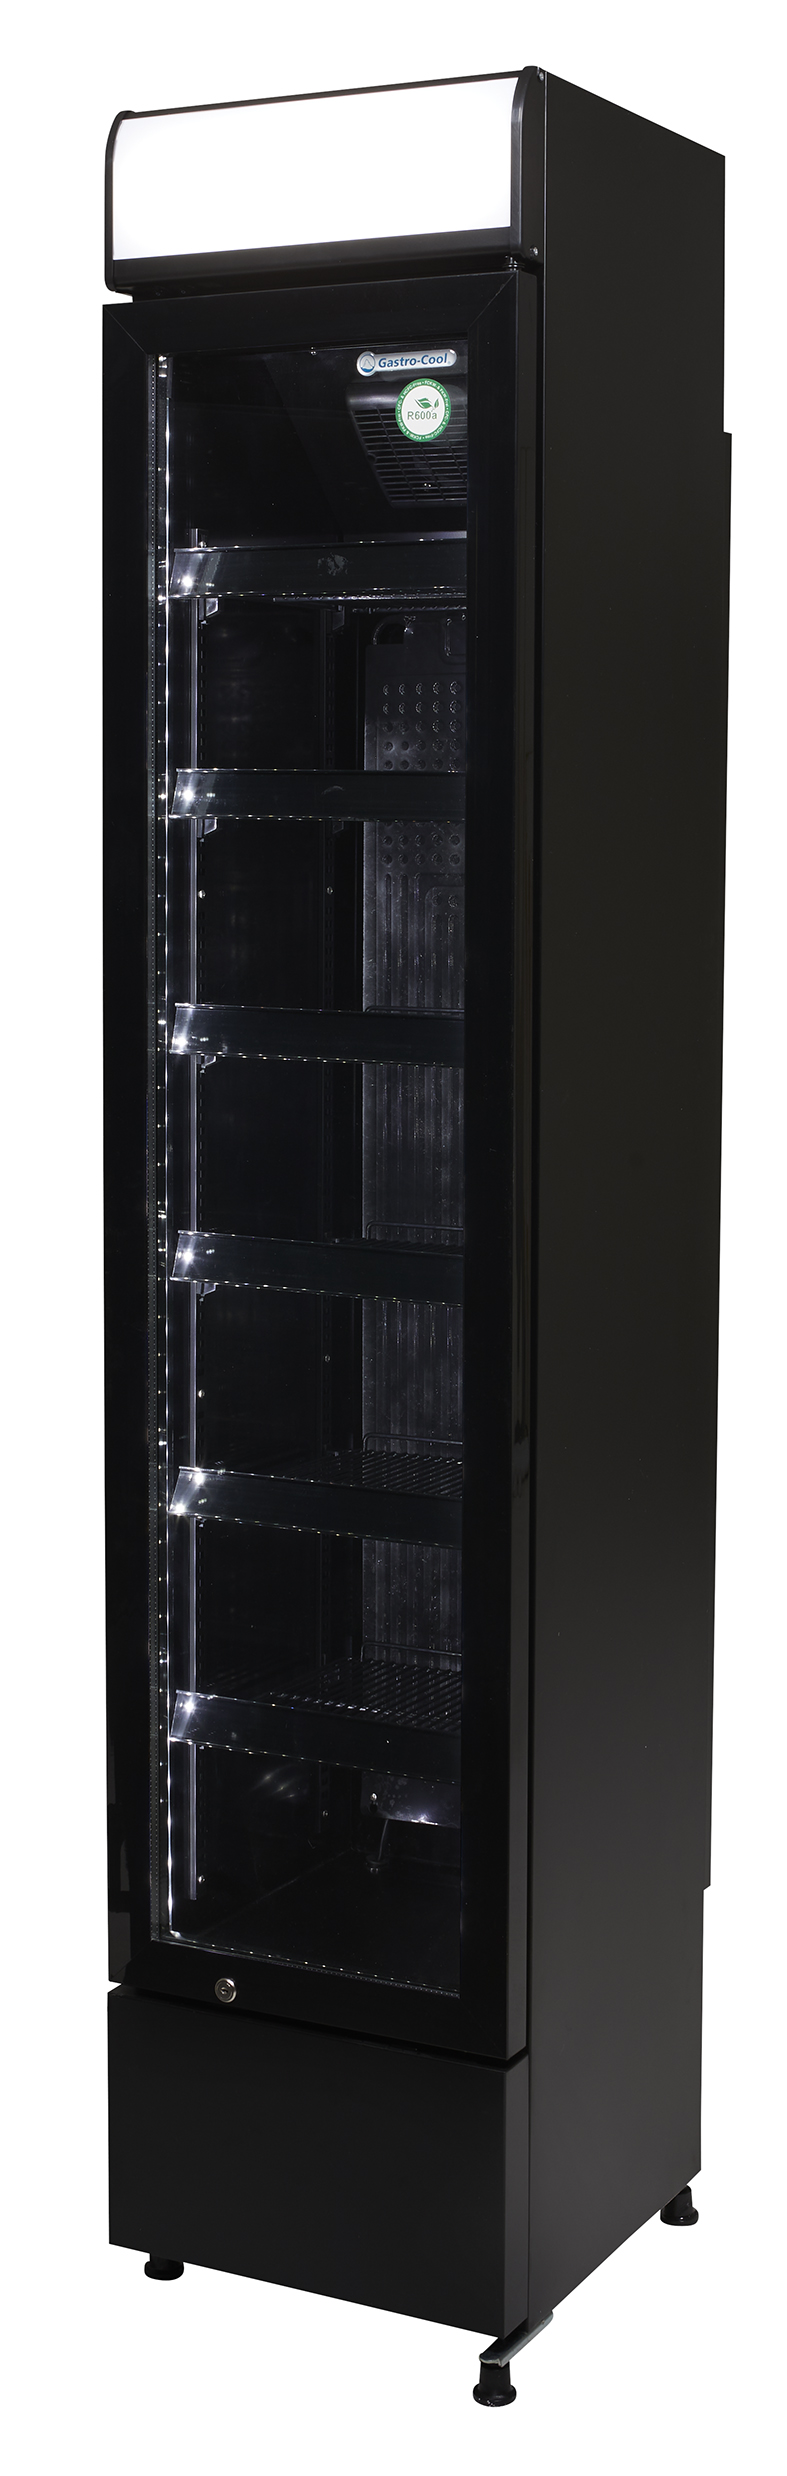 Gastro-Cool - GCDC130 schmaler Werbekühlschrank in schwarz - power LED - Seitenansicht leer